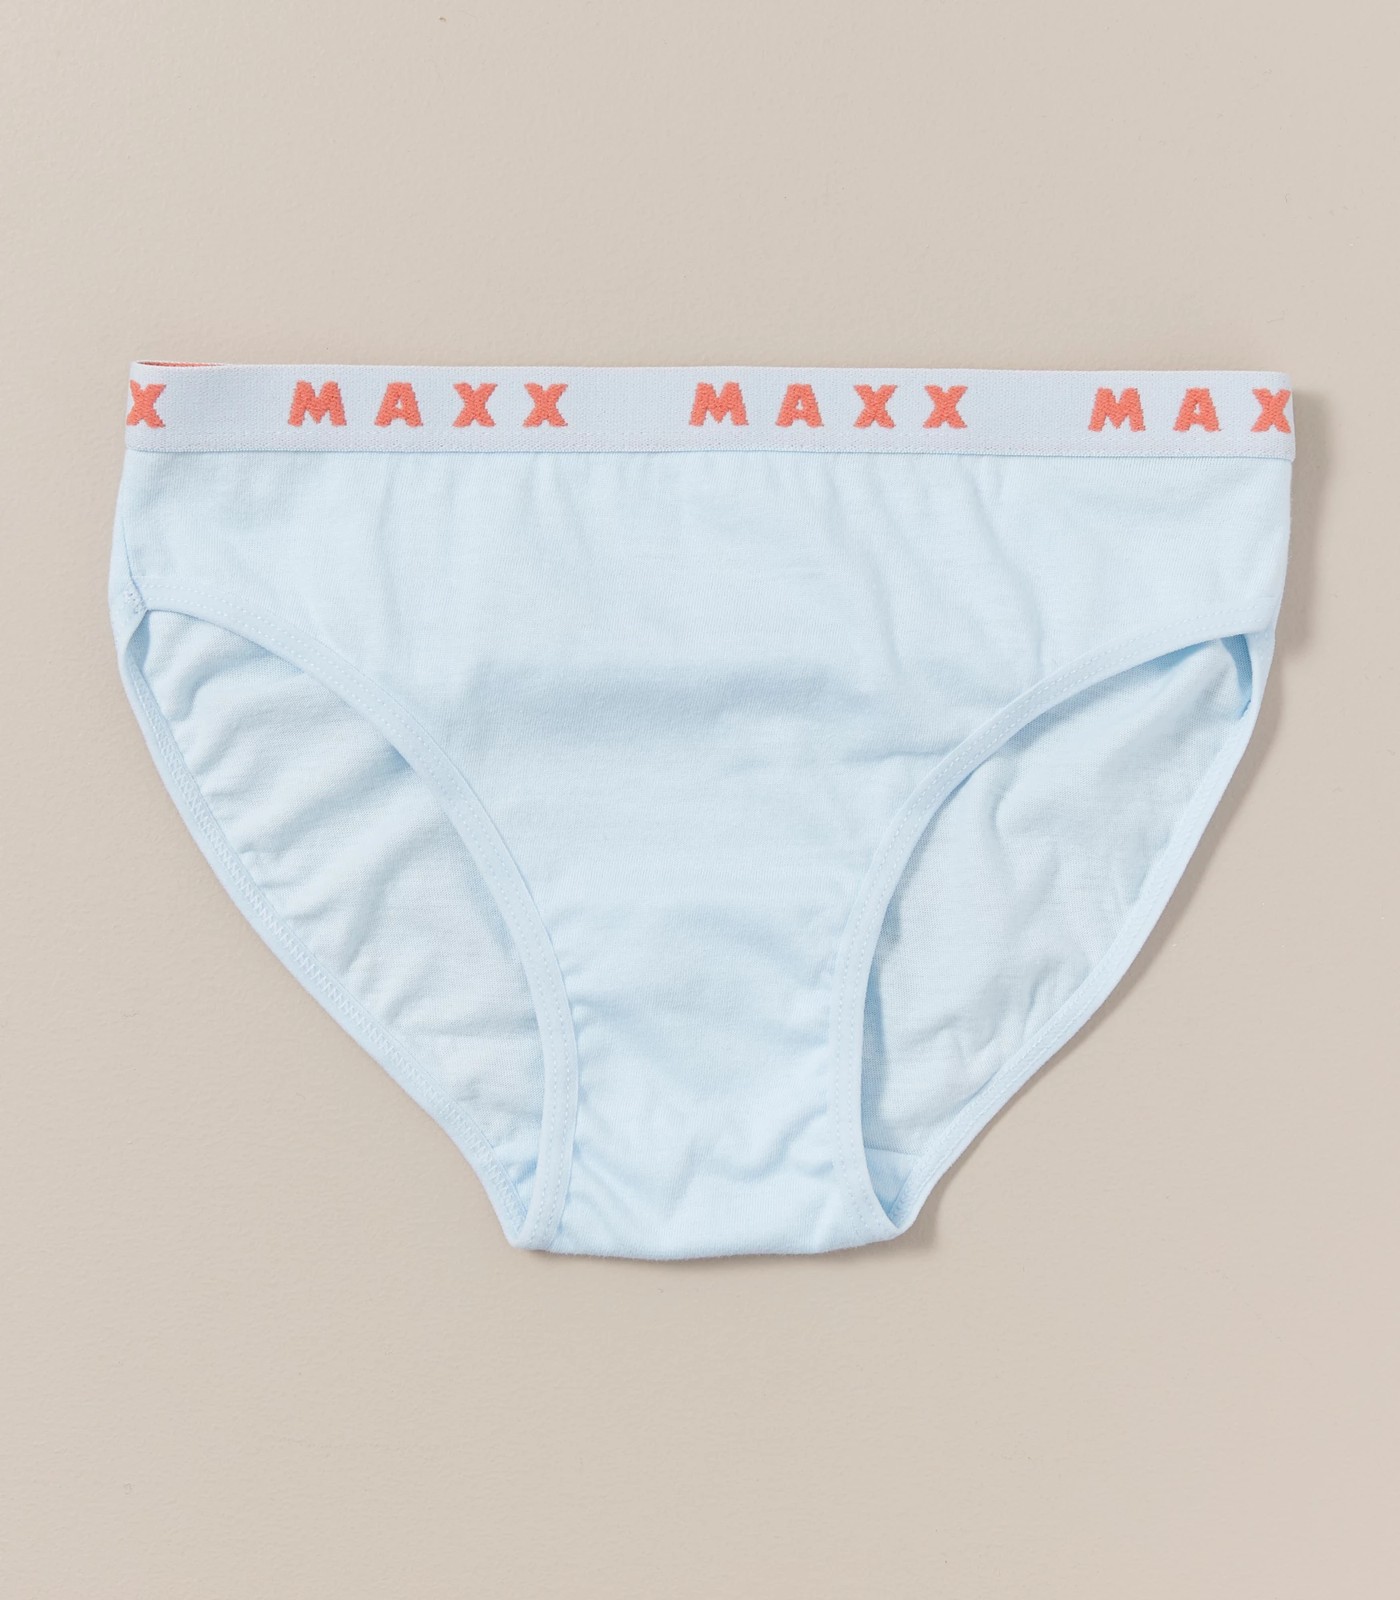 Girls size 3-4 pack 7 Days week briefs Target undies MAXX strawberry NEW  4975